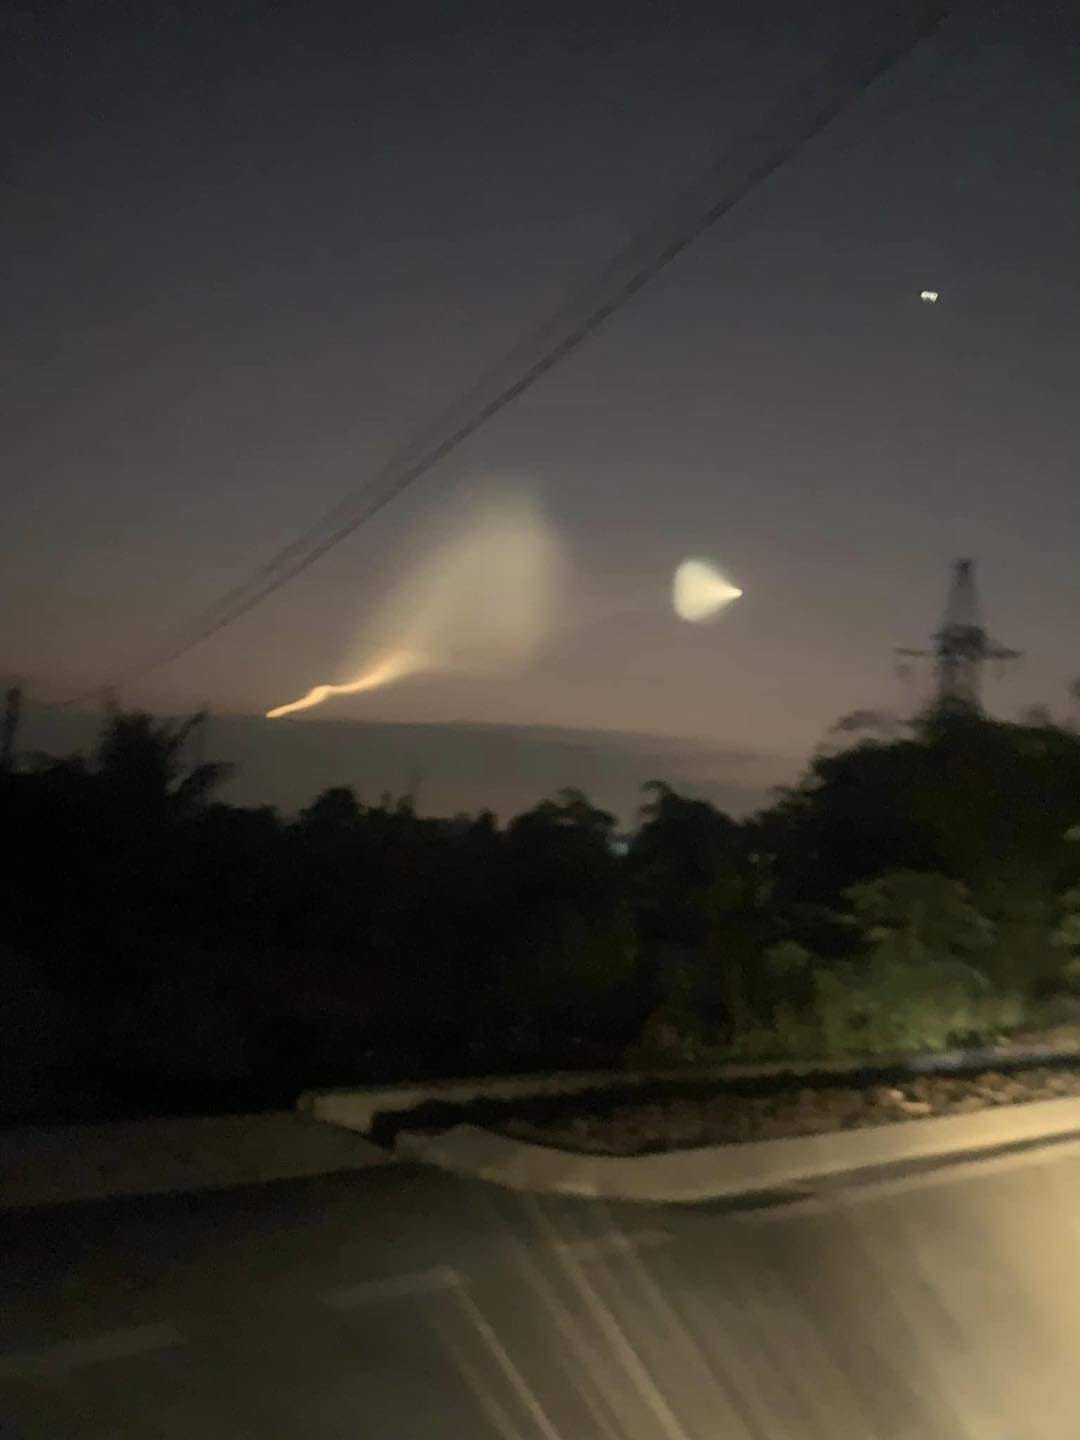 Hiện tượng vệt sáng kỳ lạ xuất hiện trên bầu trời các tỉnh phía Bắc sáng ngày 26/12 khiến netizen xôn xao - ảnh 5